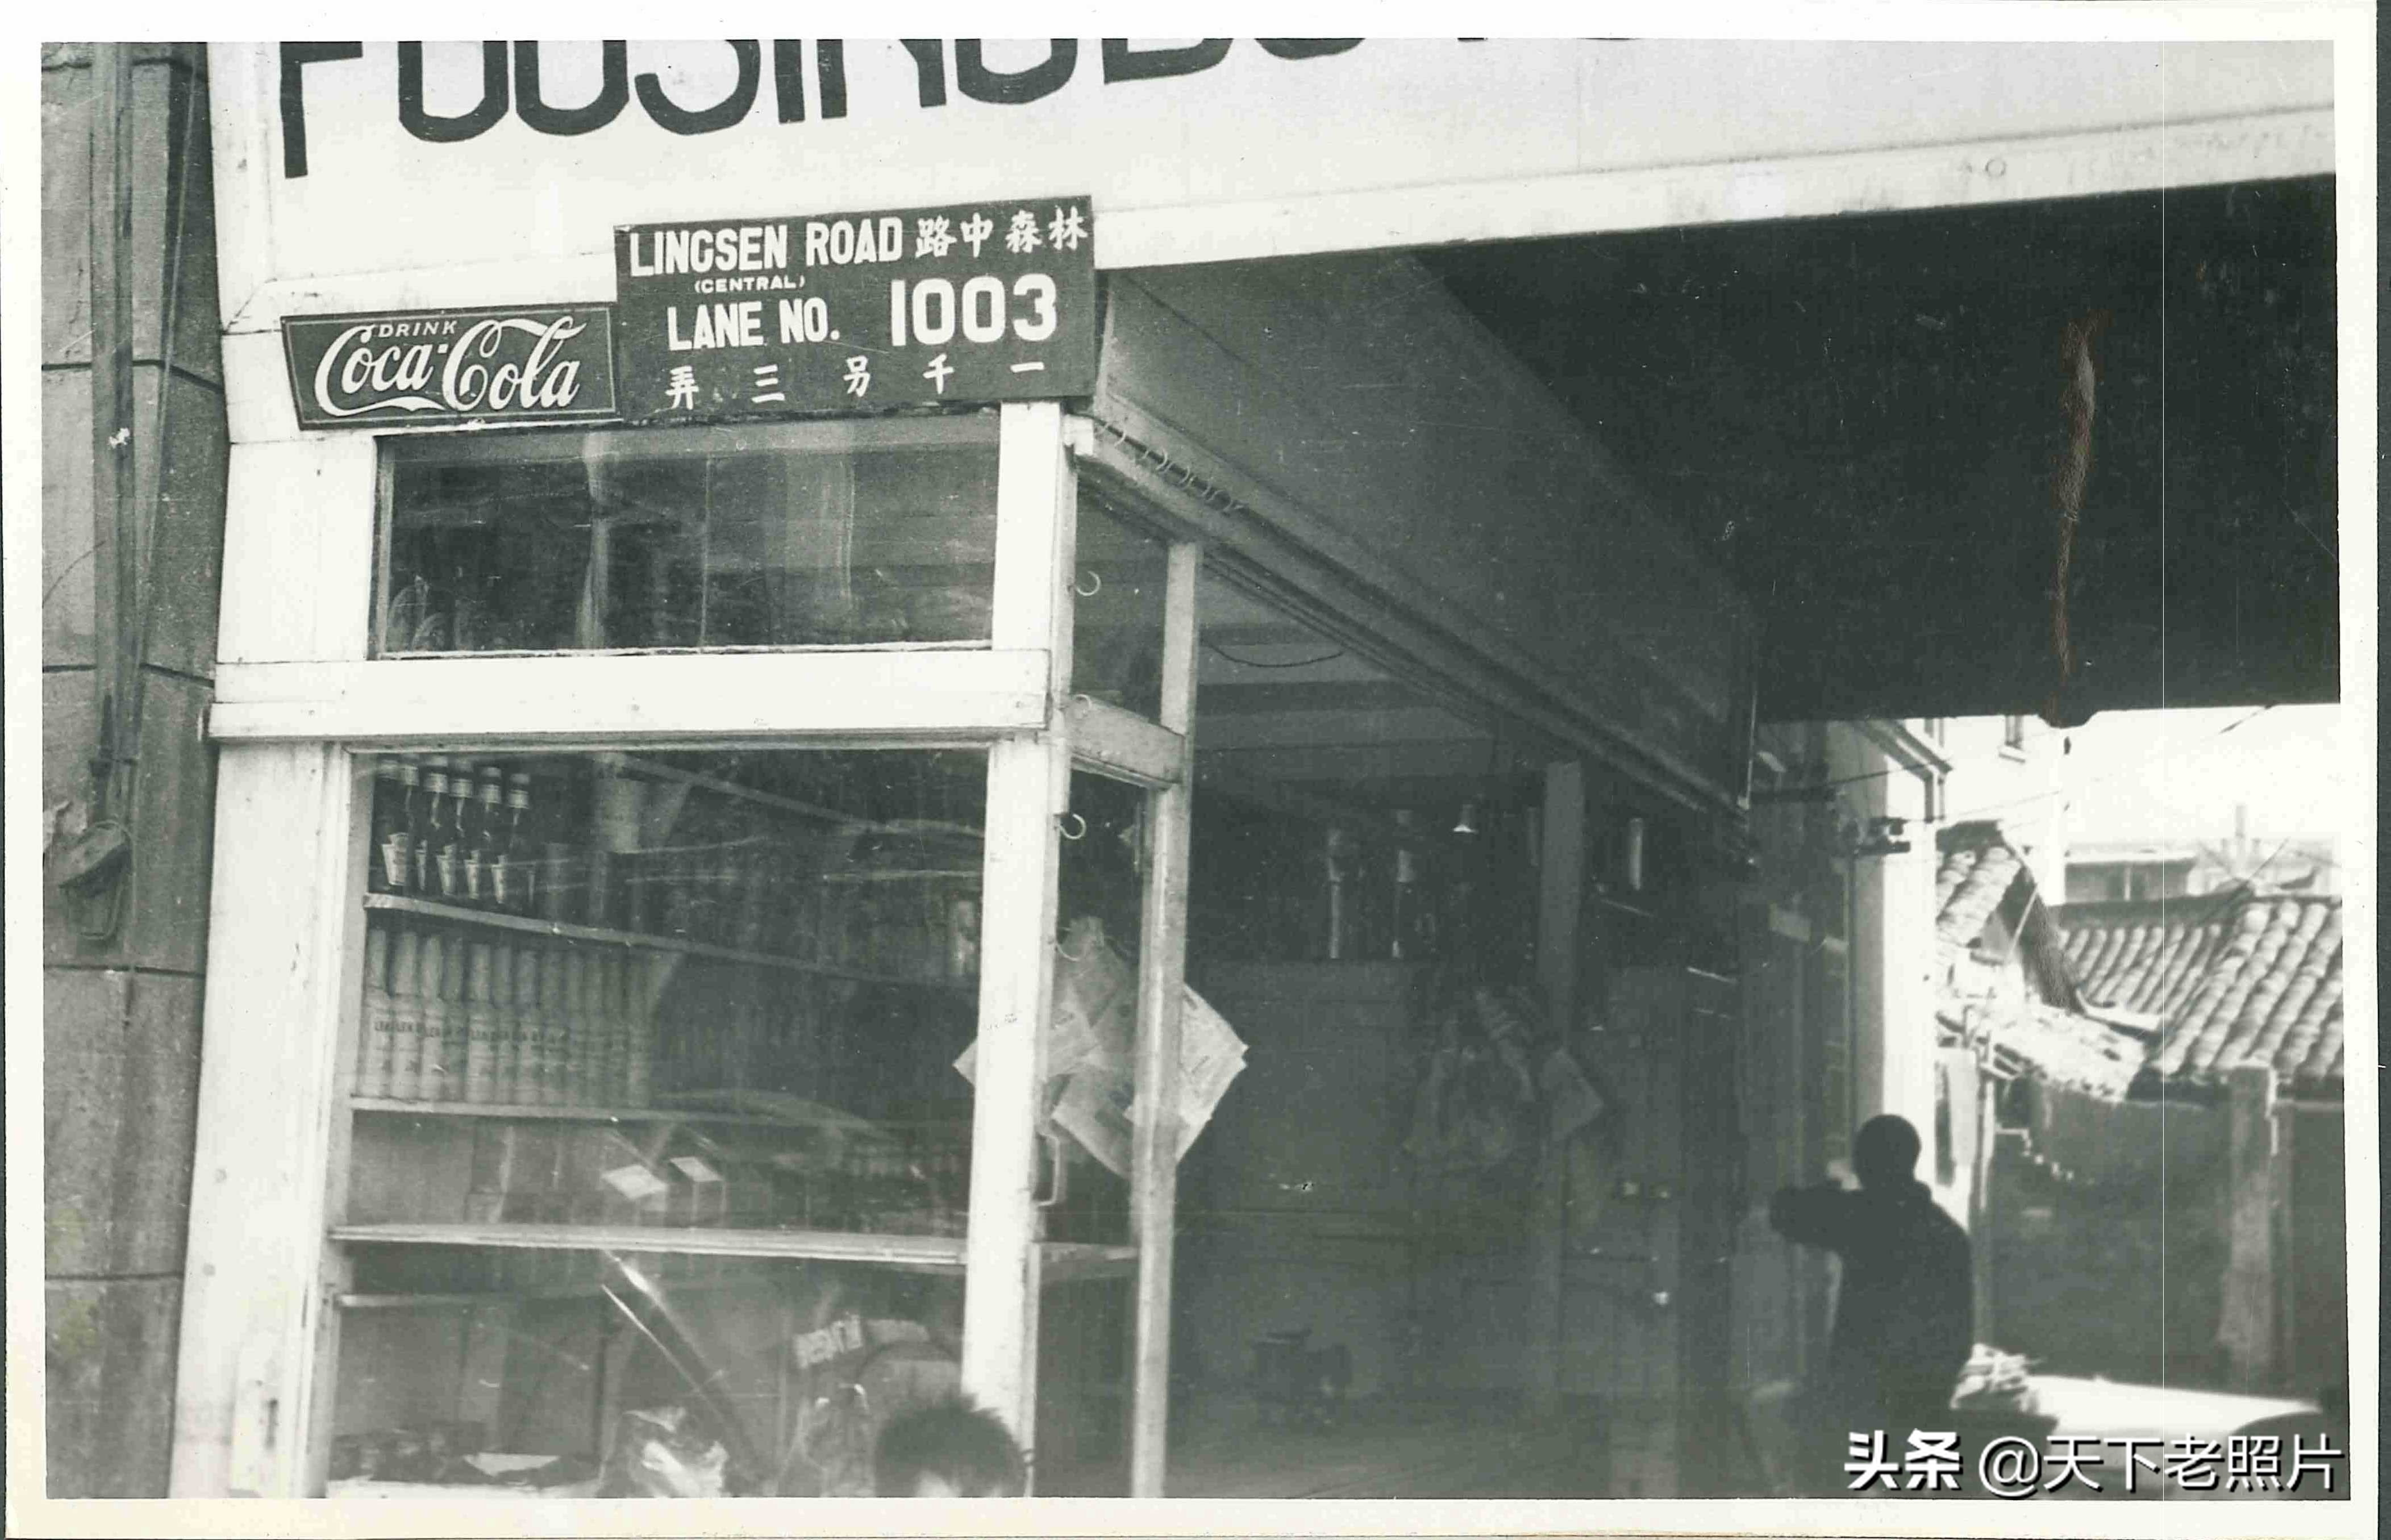 超出你的想象，民国上海老照片中有如此多的可口可乐元素(下)